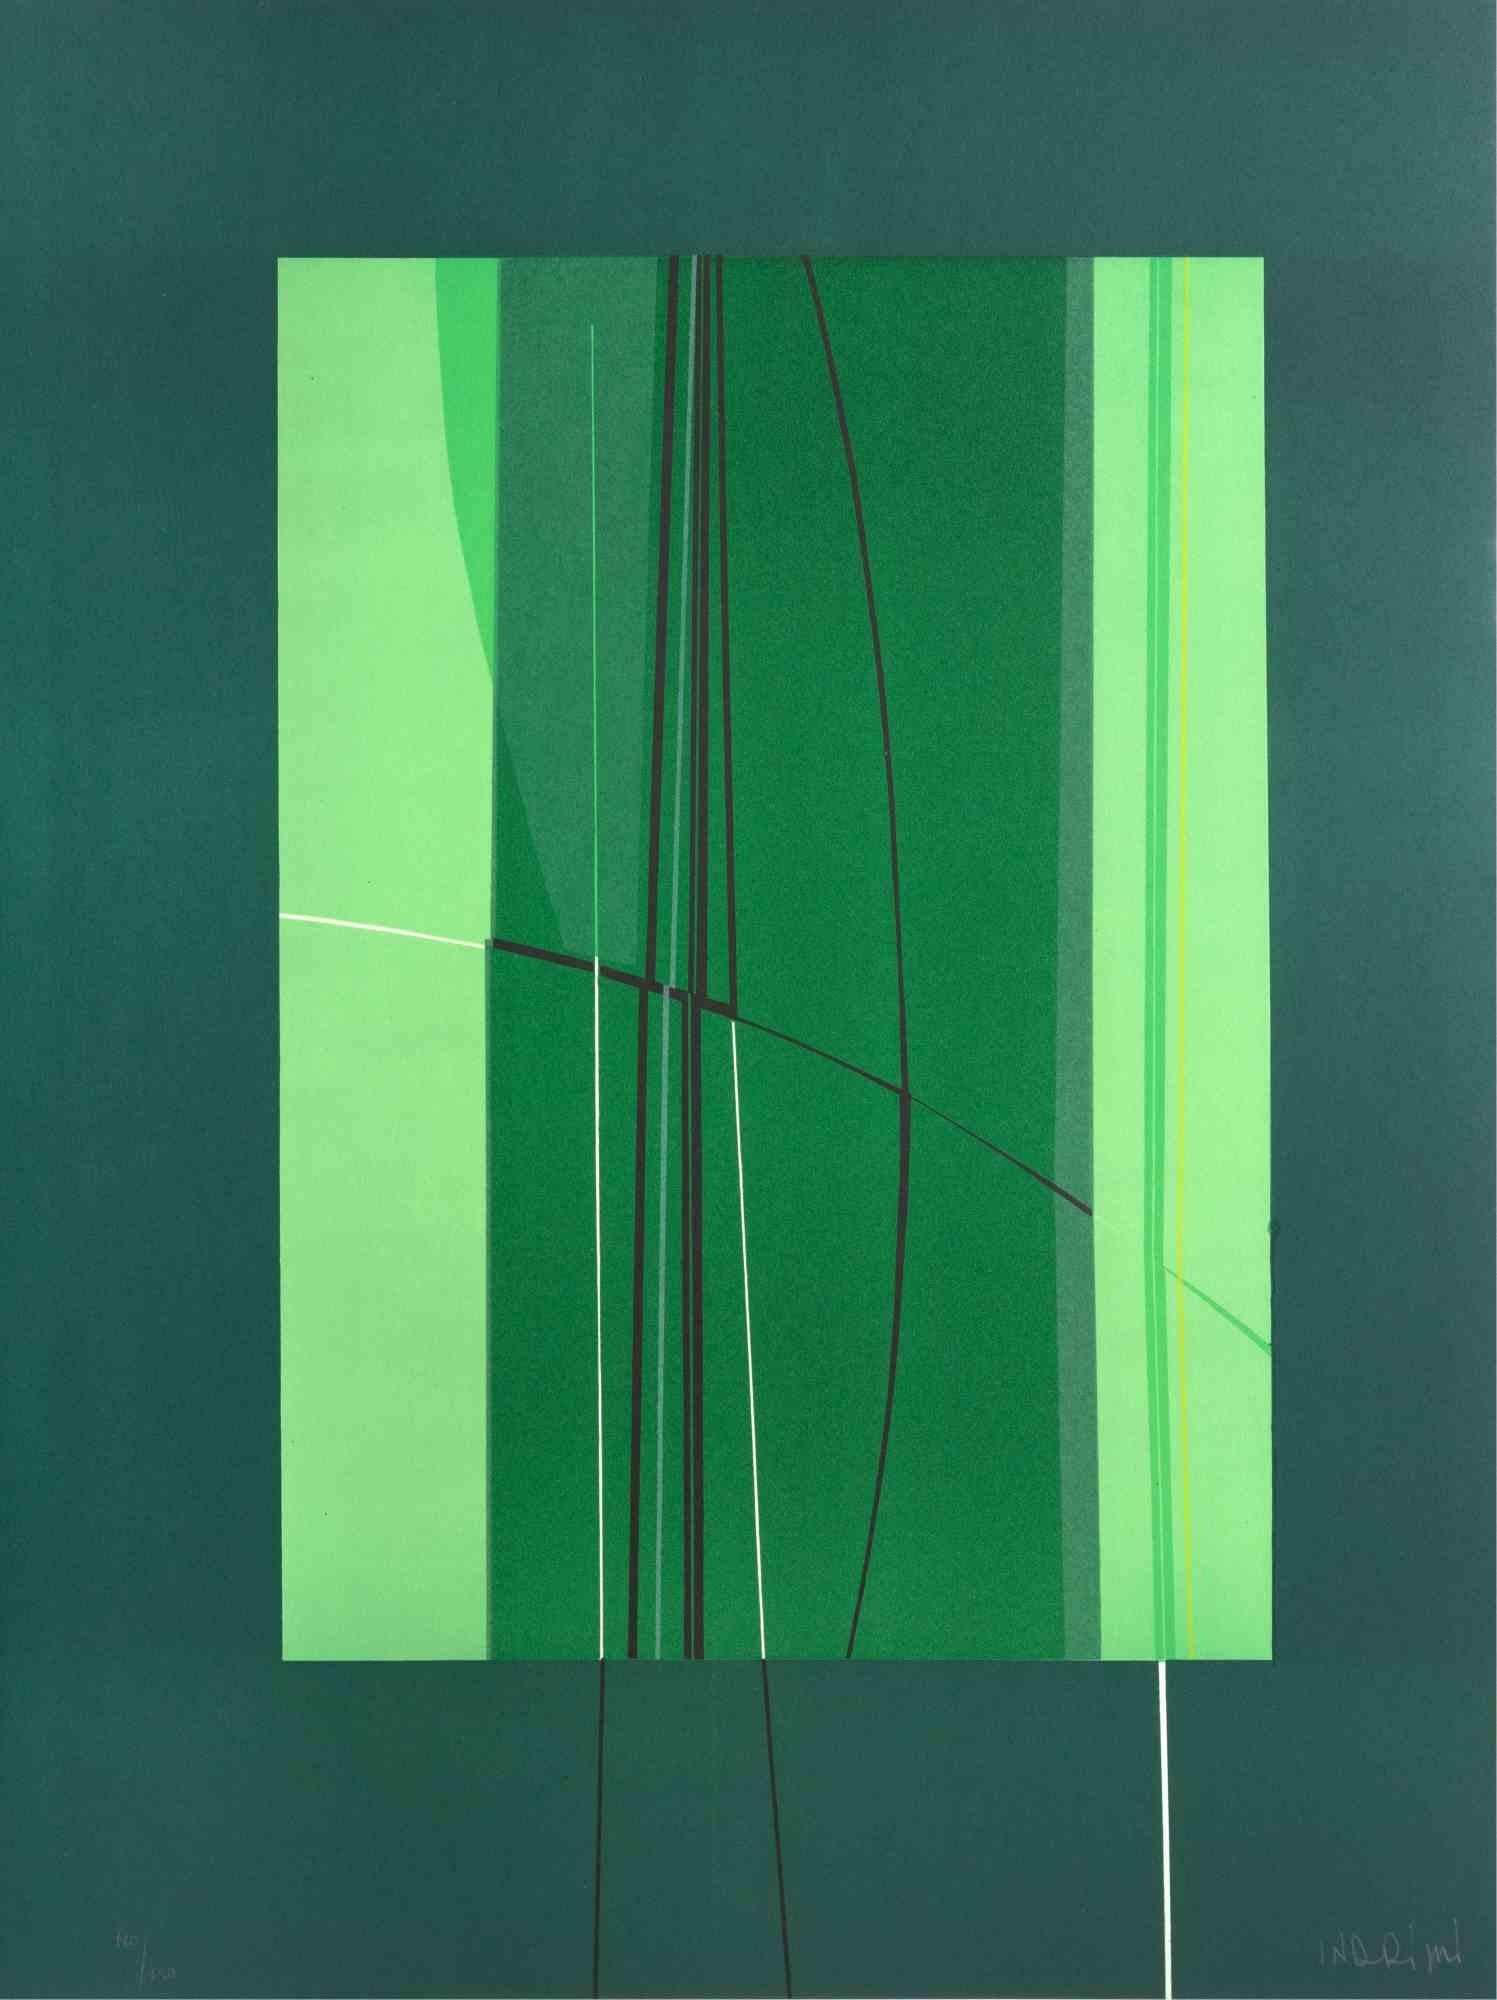 Green est une œuvre d'art contemporain réalisée par Lorenzo Indrimi dans les années 1970.

Lithographie en couleurs mélangées.

Signé à la main et daté dans la marge inférieure.

Édition de 110/150.